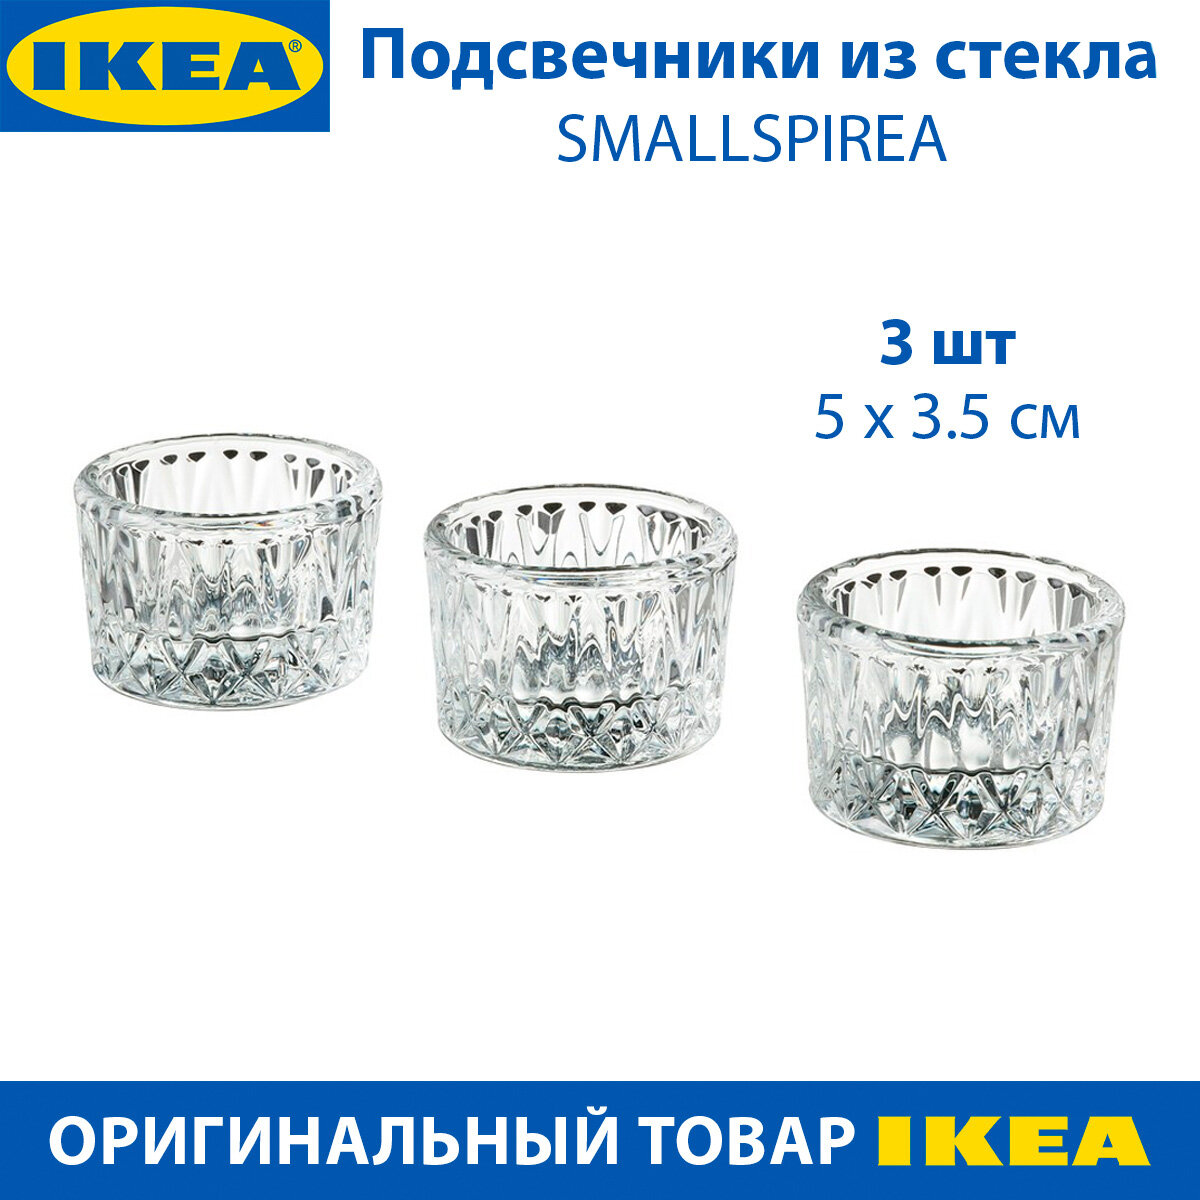 Подсвечники IKEA - SMALLSPIREA (смэллспирея) стеклянные с узором 5х5х3.5 см 3 шт в упаковке